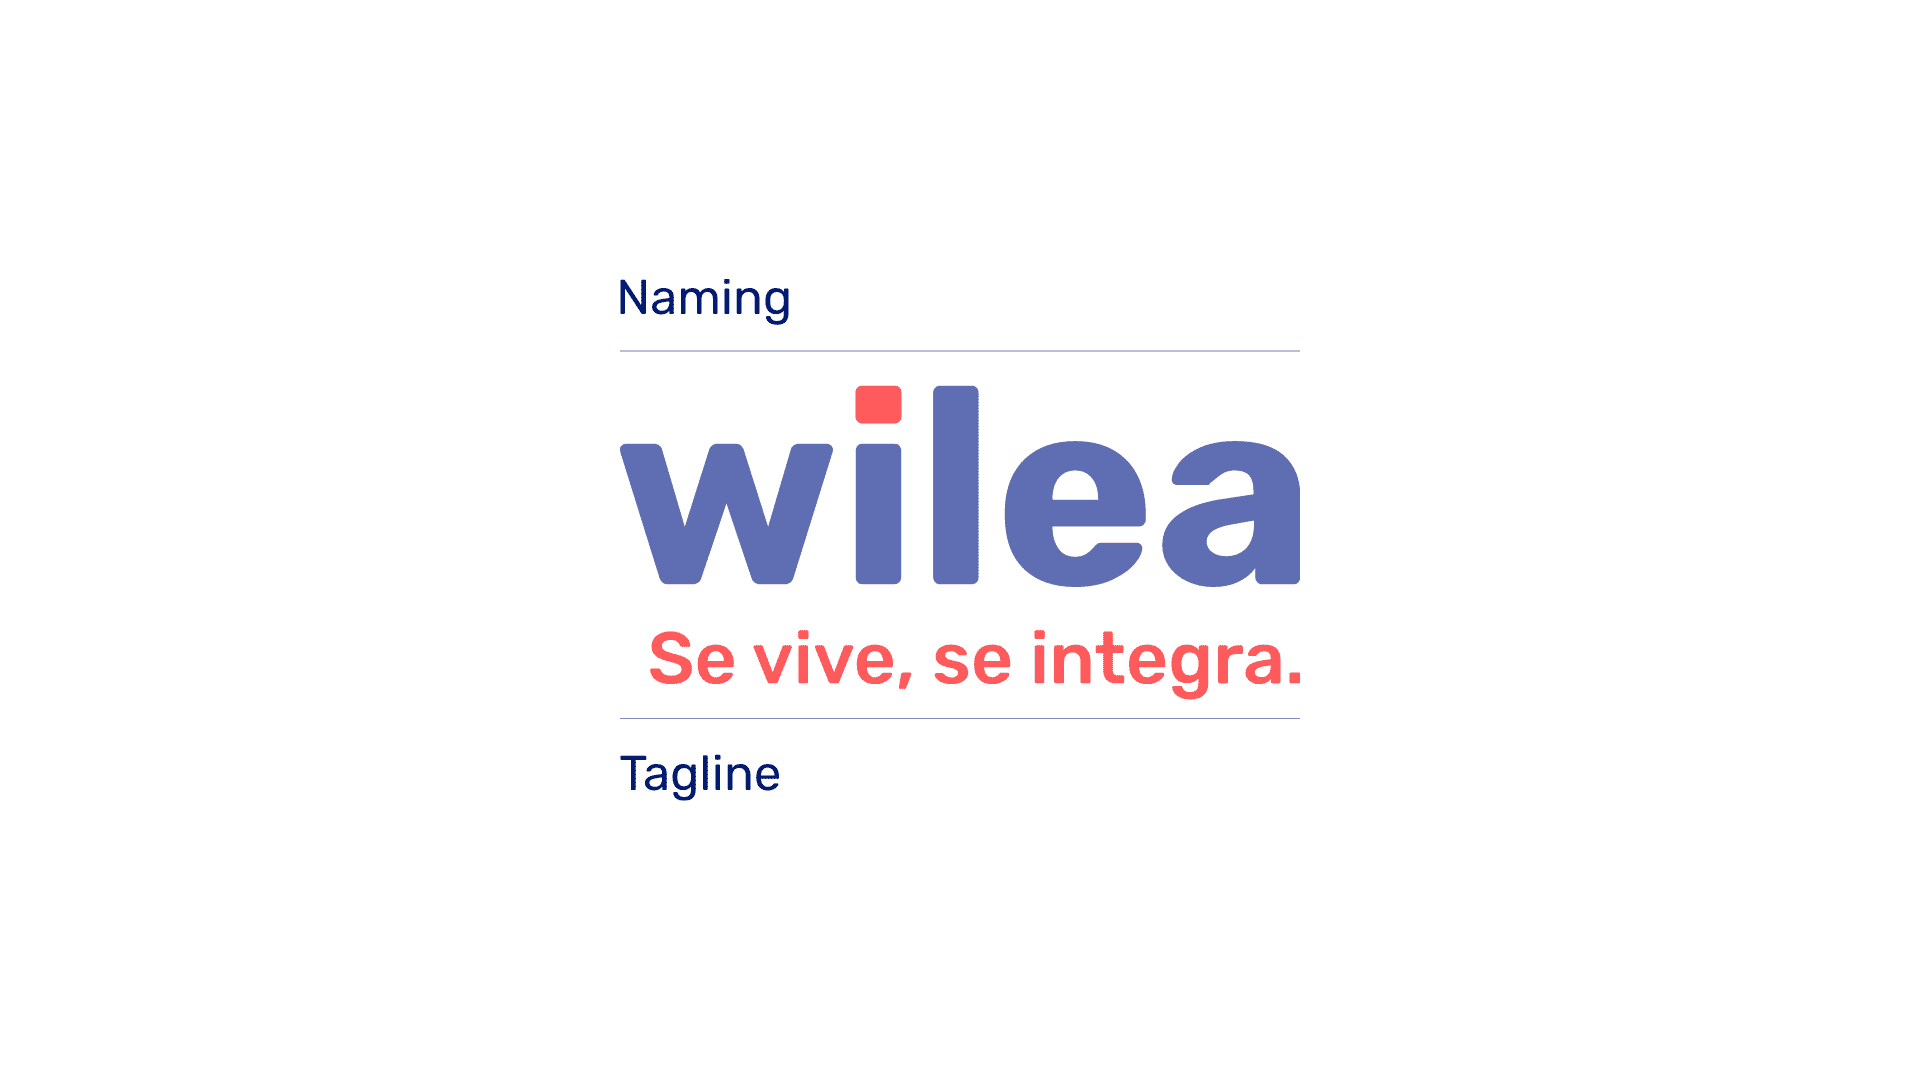 Concepto de la marca wilea se vive se integra presentación de identidad visual de marca comercial